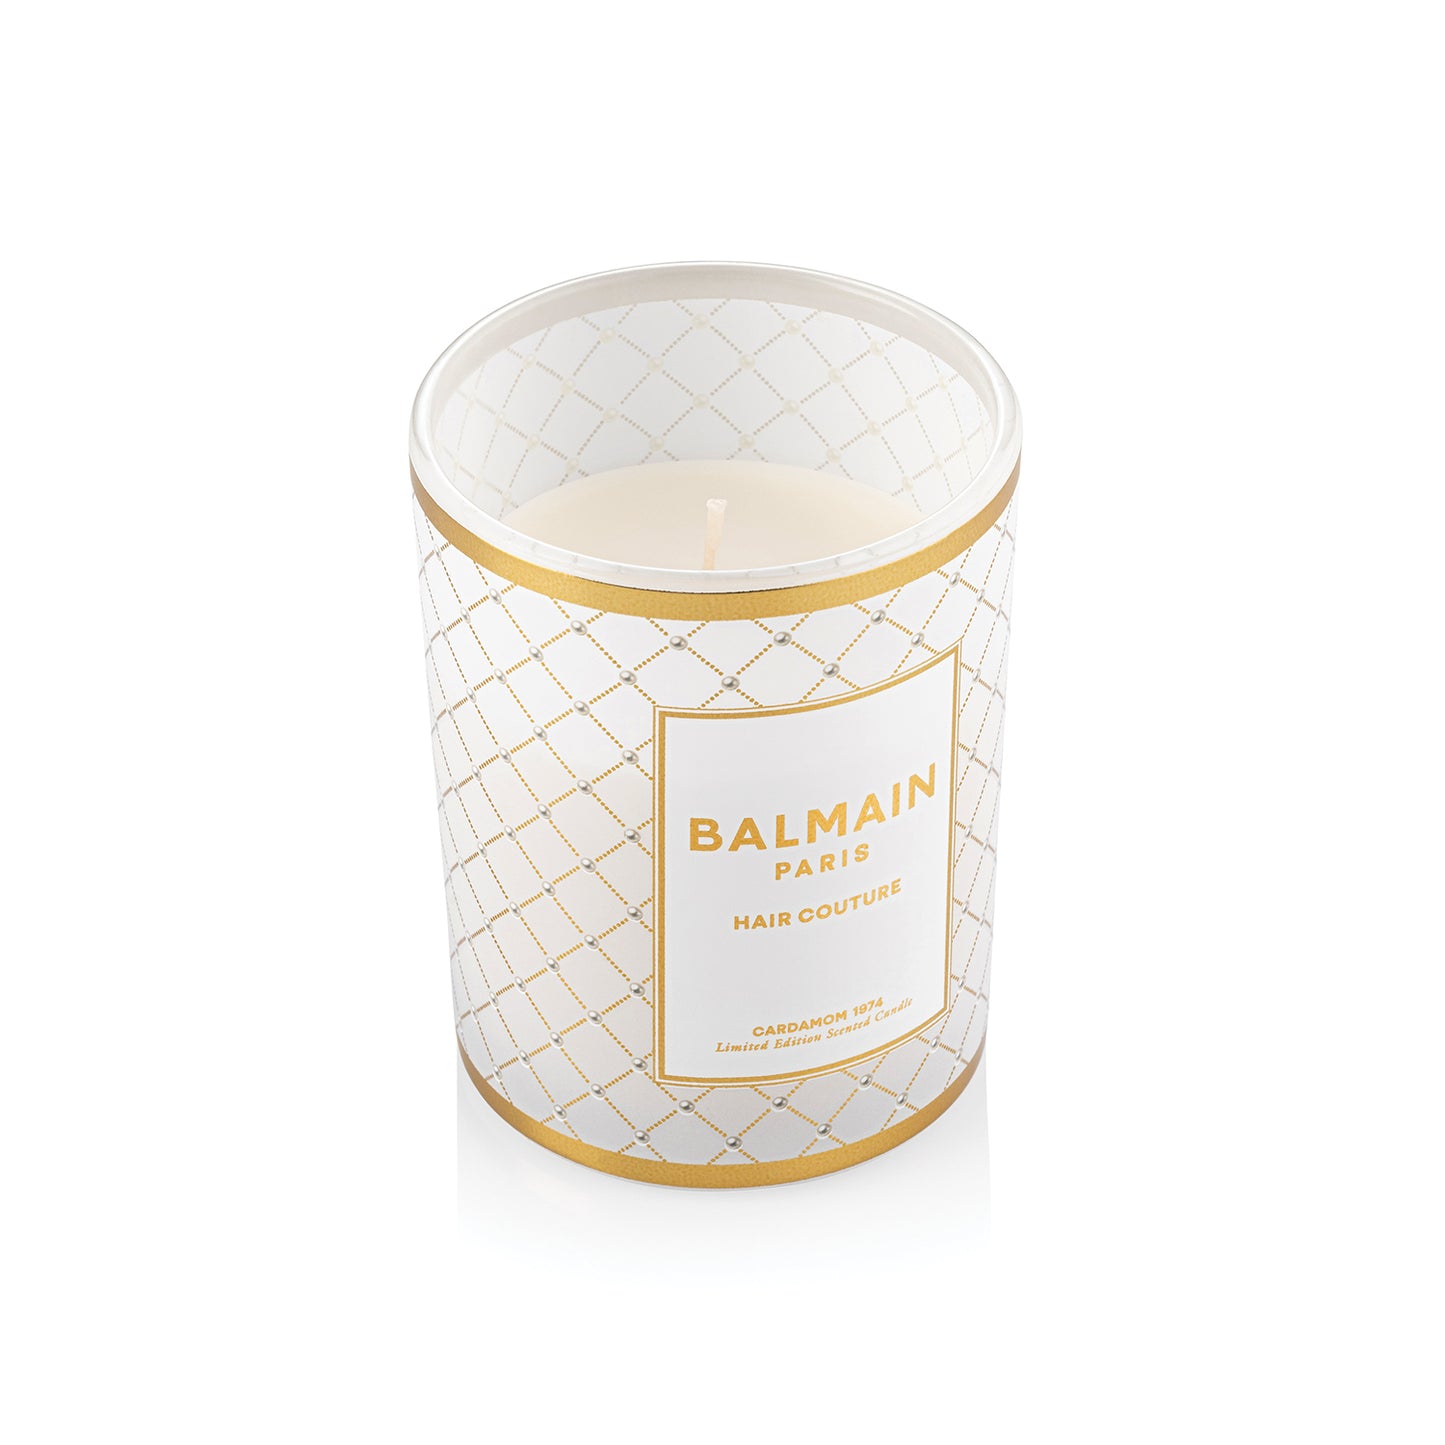 Alege două din produsele esențiale de iarnă Balmain și primești CADOU o lumânare parfumată Balmain în ediție Limitată